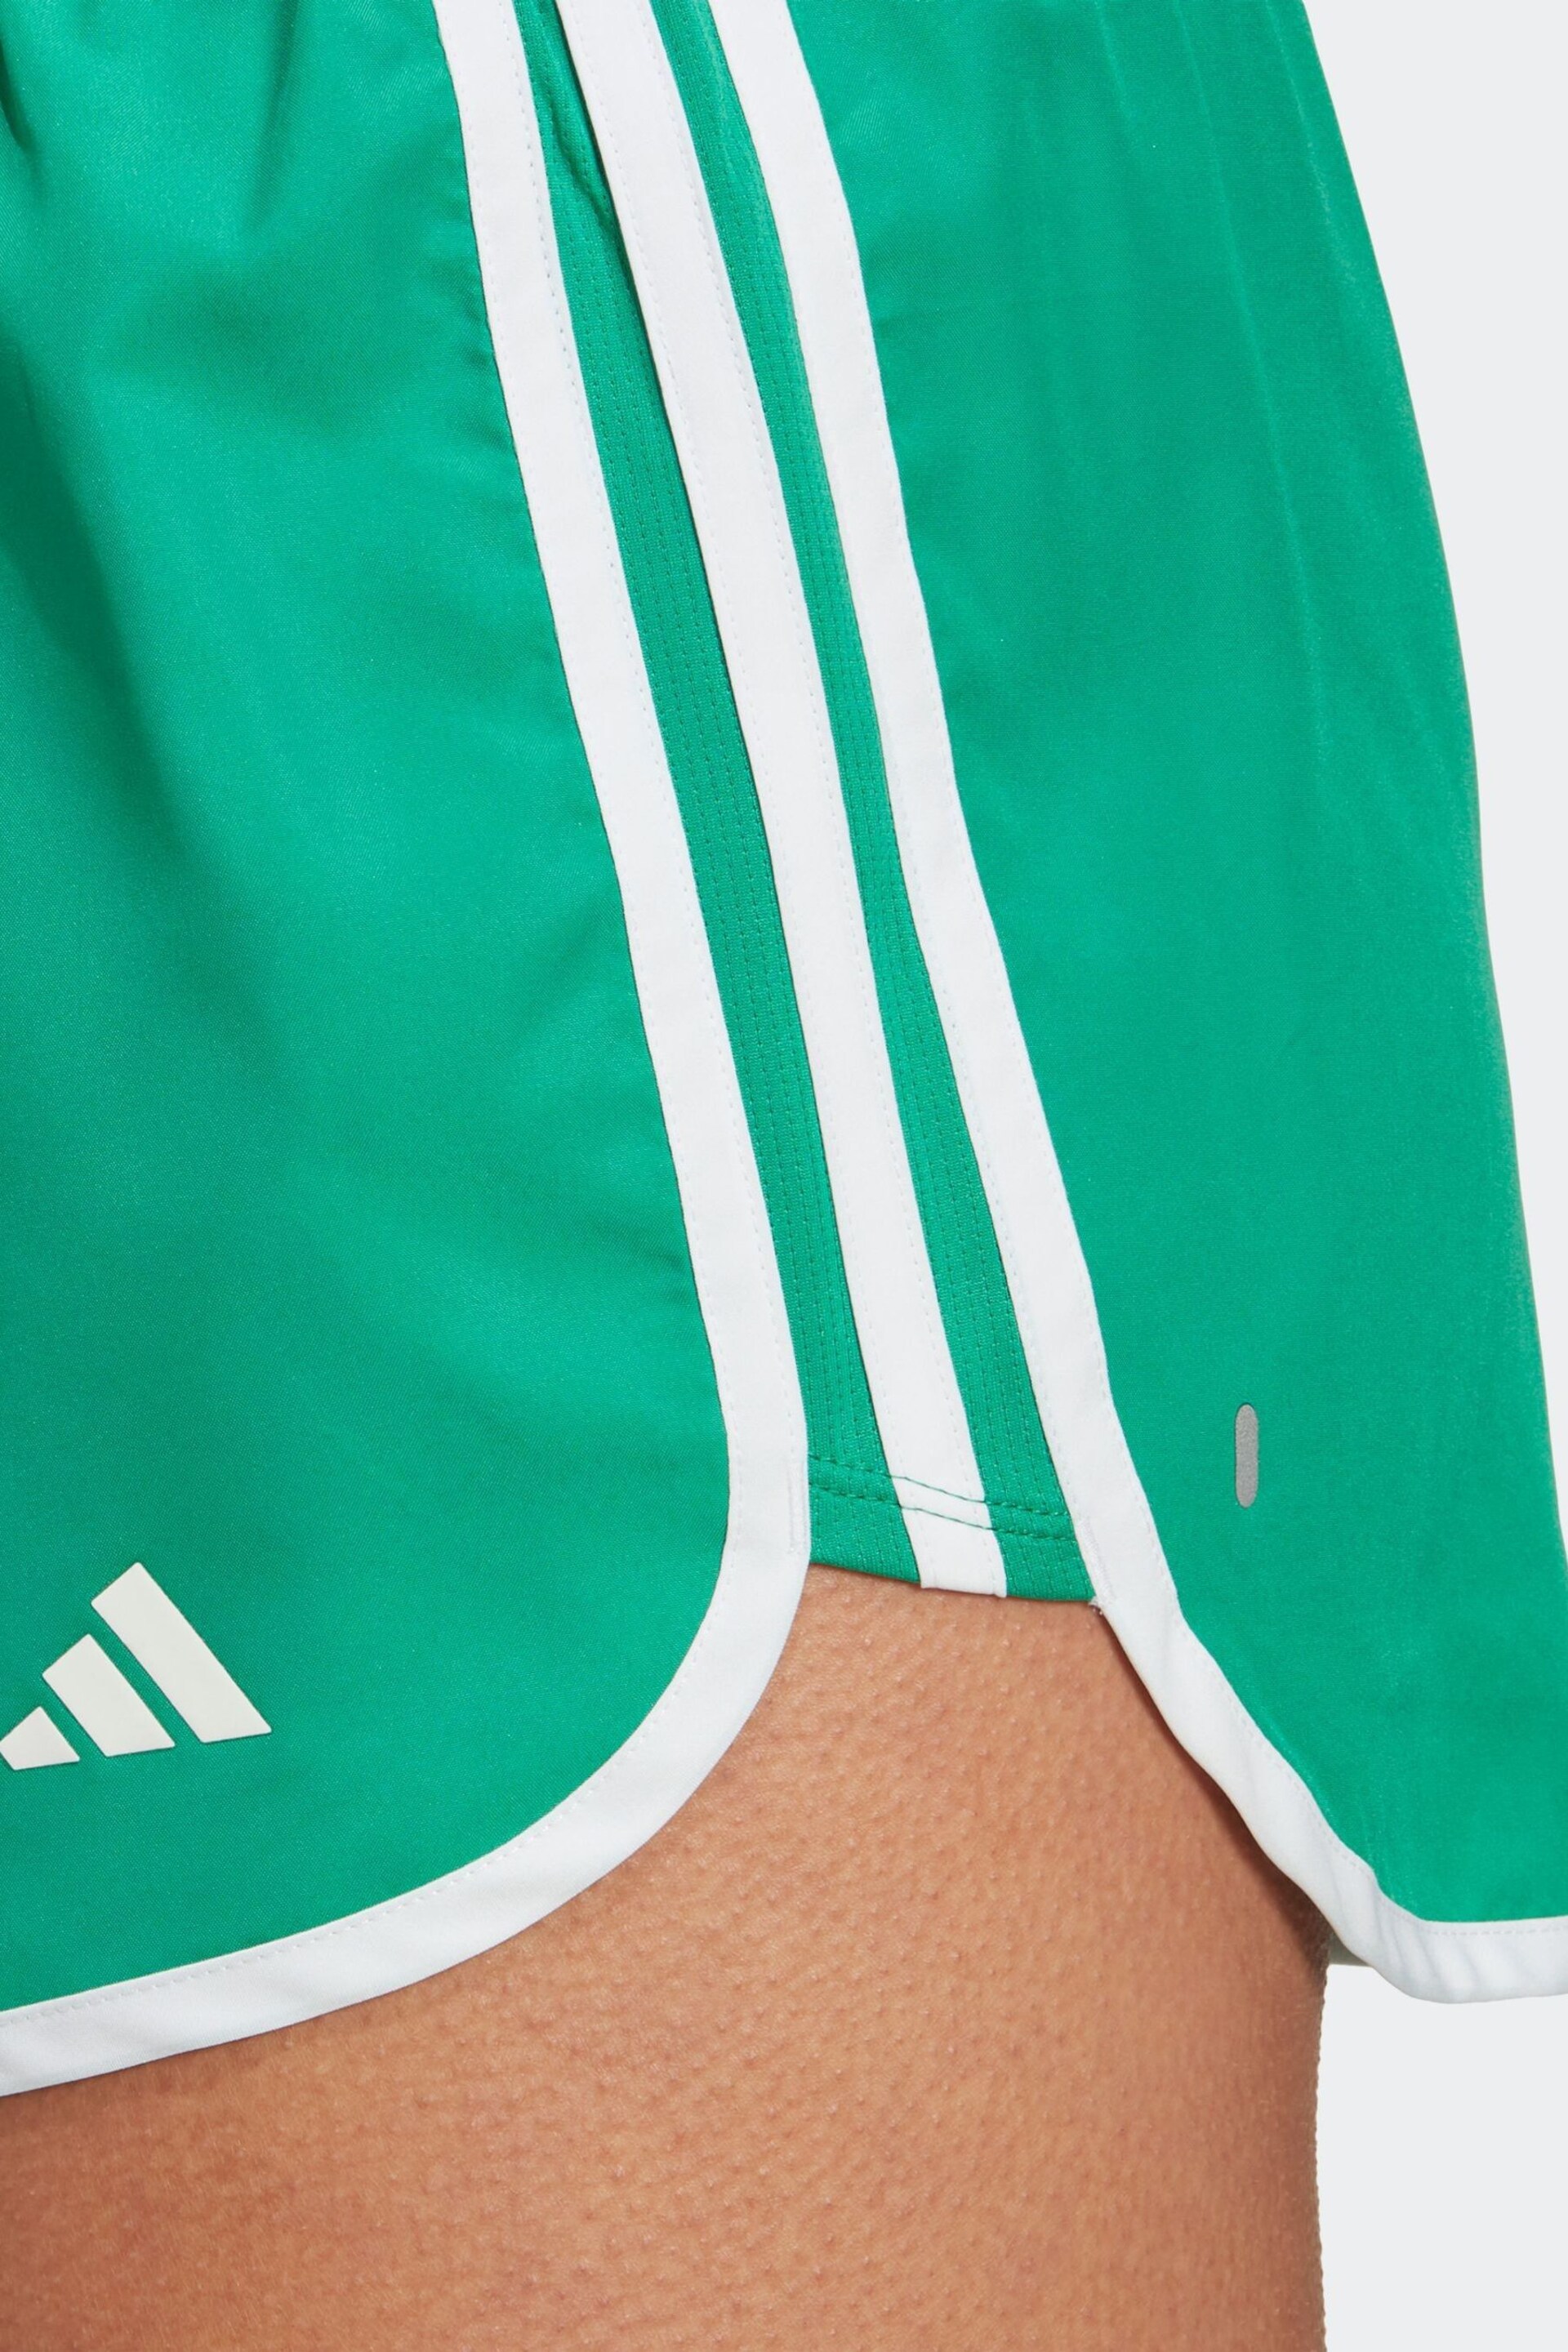 adidas Green M20 Shorts - Image 4 of 6